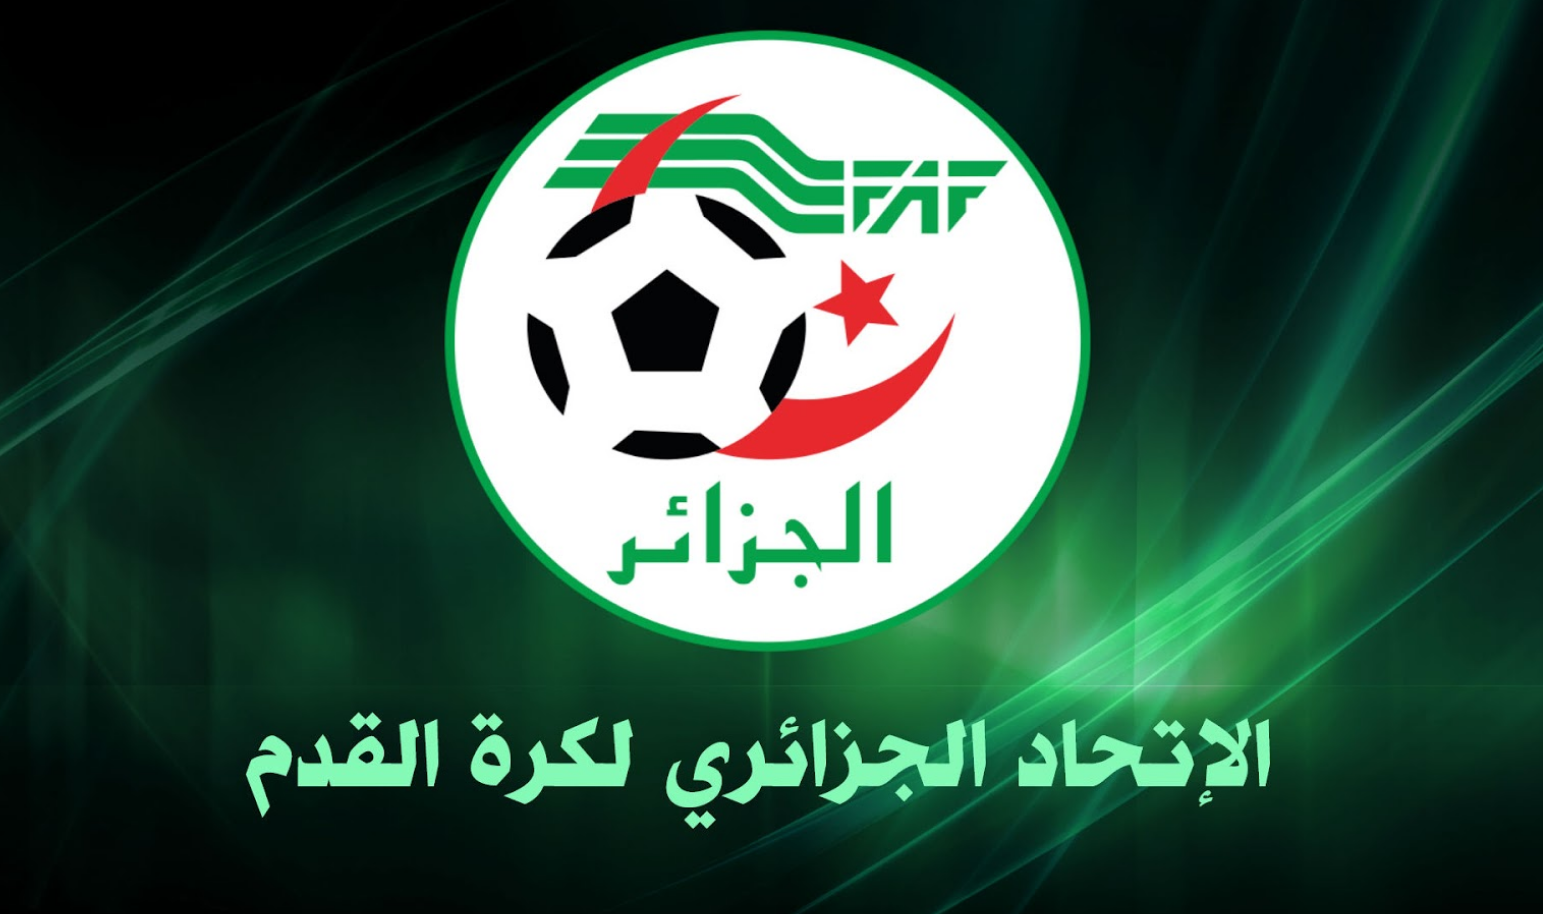 الإتحاد الجزائري لكرة القدم يحدد شروط الترشح لرئاسة الفاف